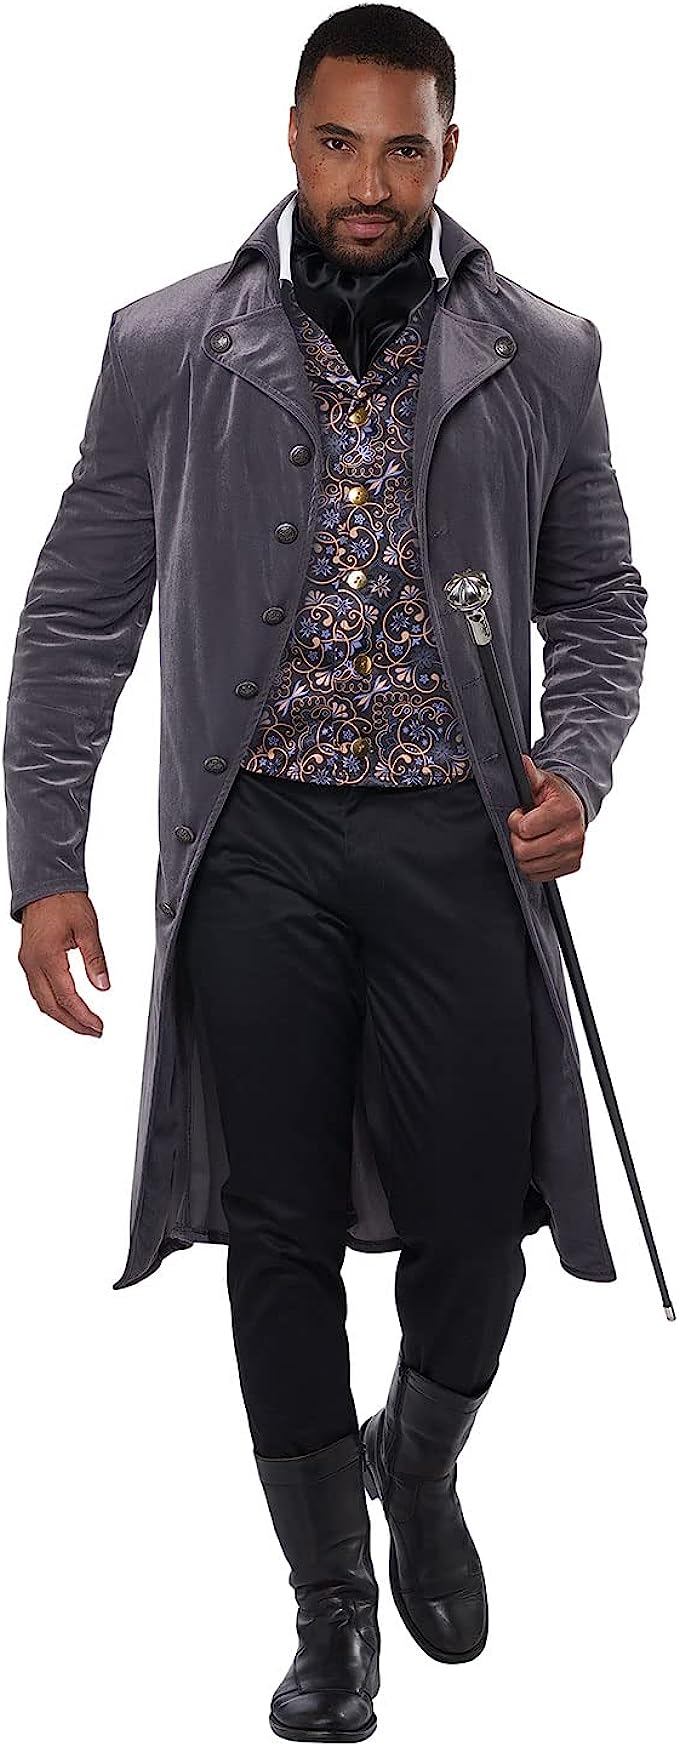 Mens Regency Coat and Vest Set - Adult Costume